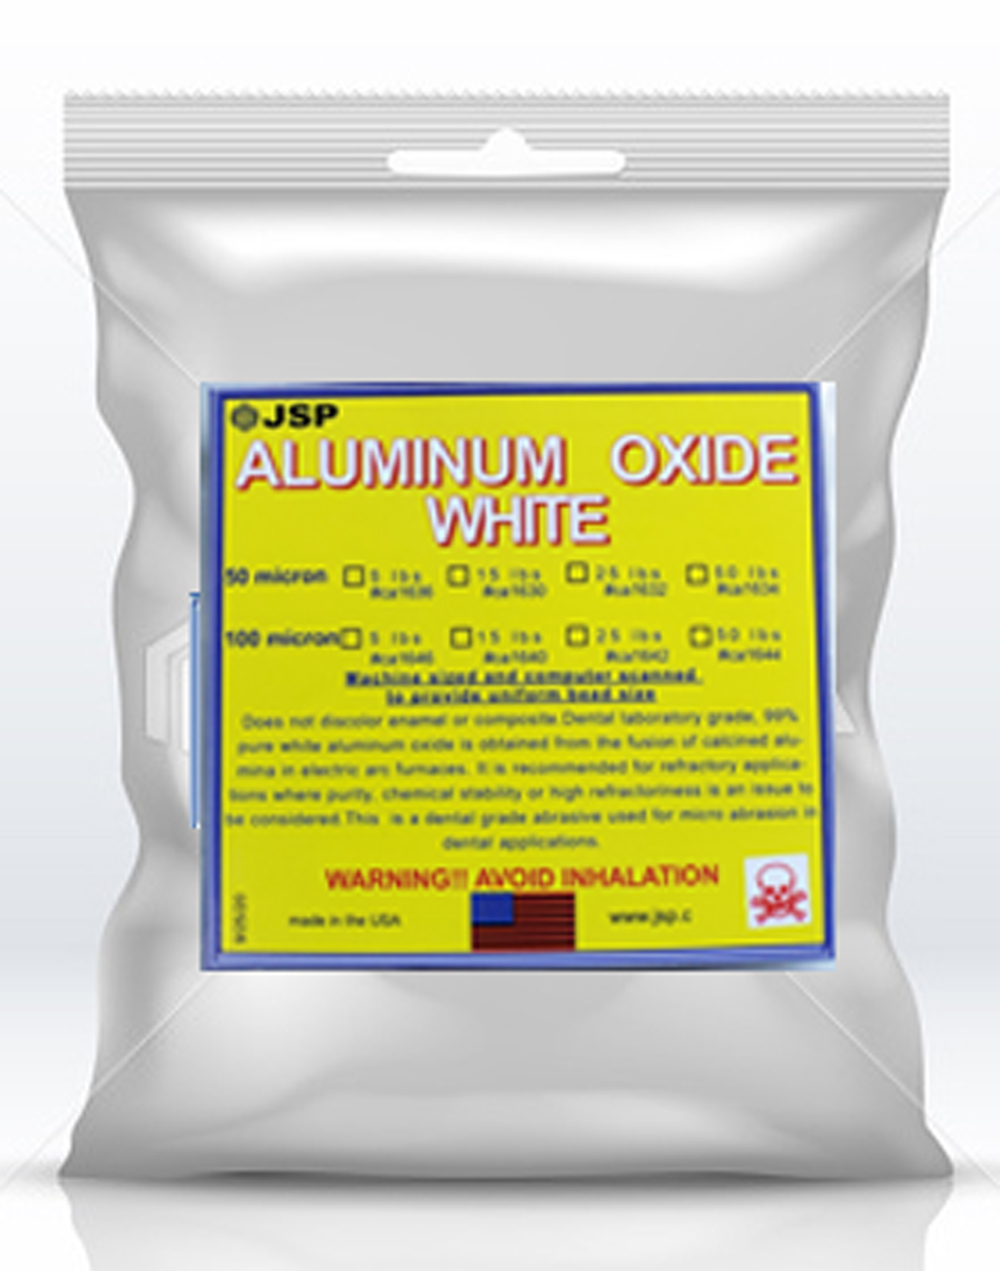 ALUMINUM OXIDE 50 micron 1 lb